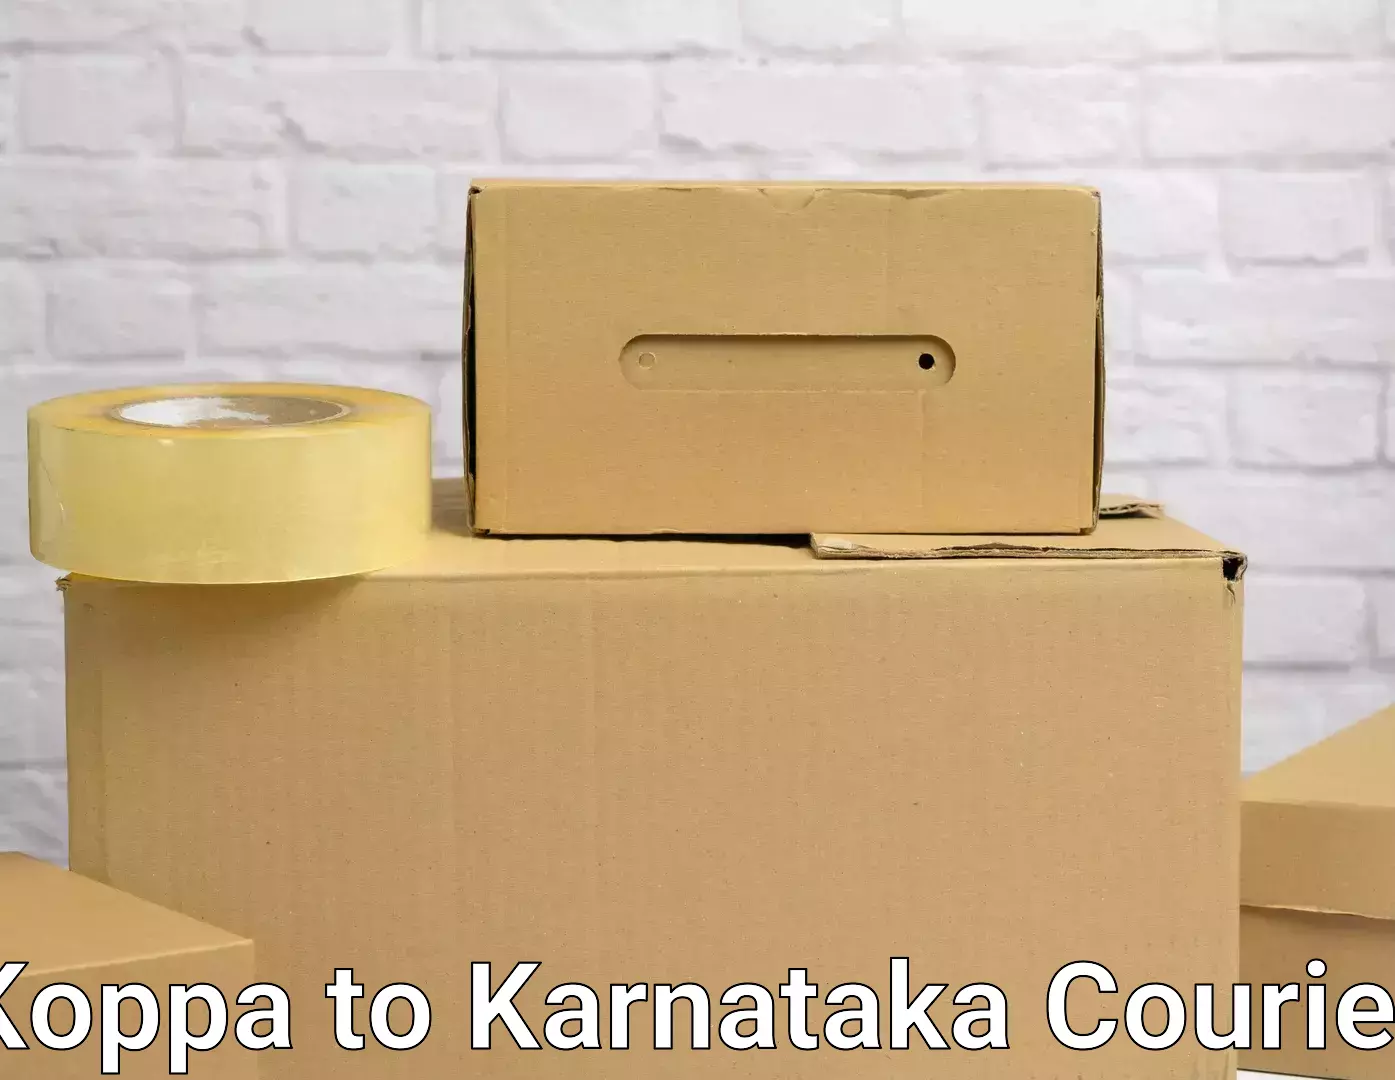 Professional moving assistance Koppa to Karnataka